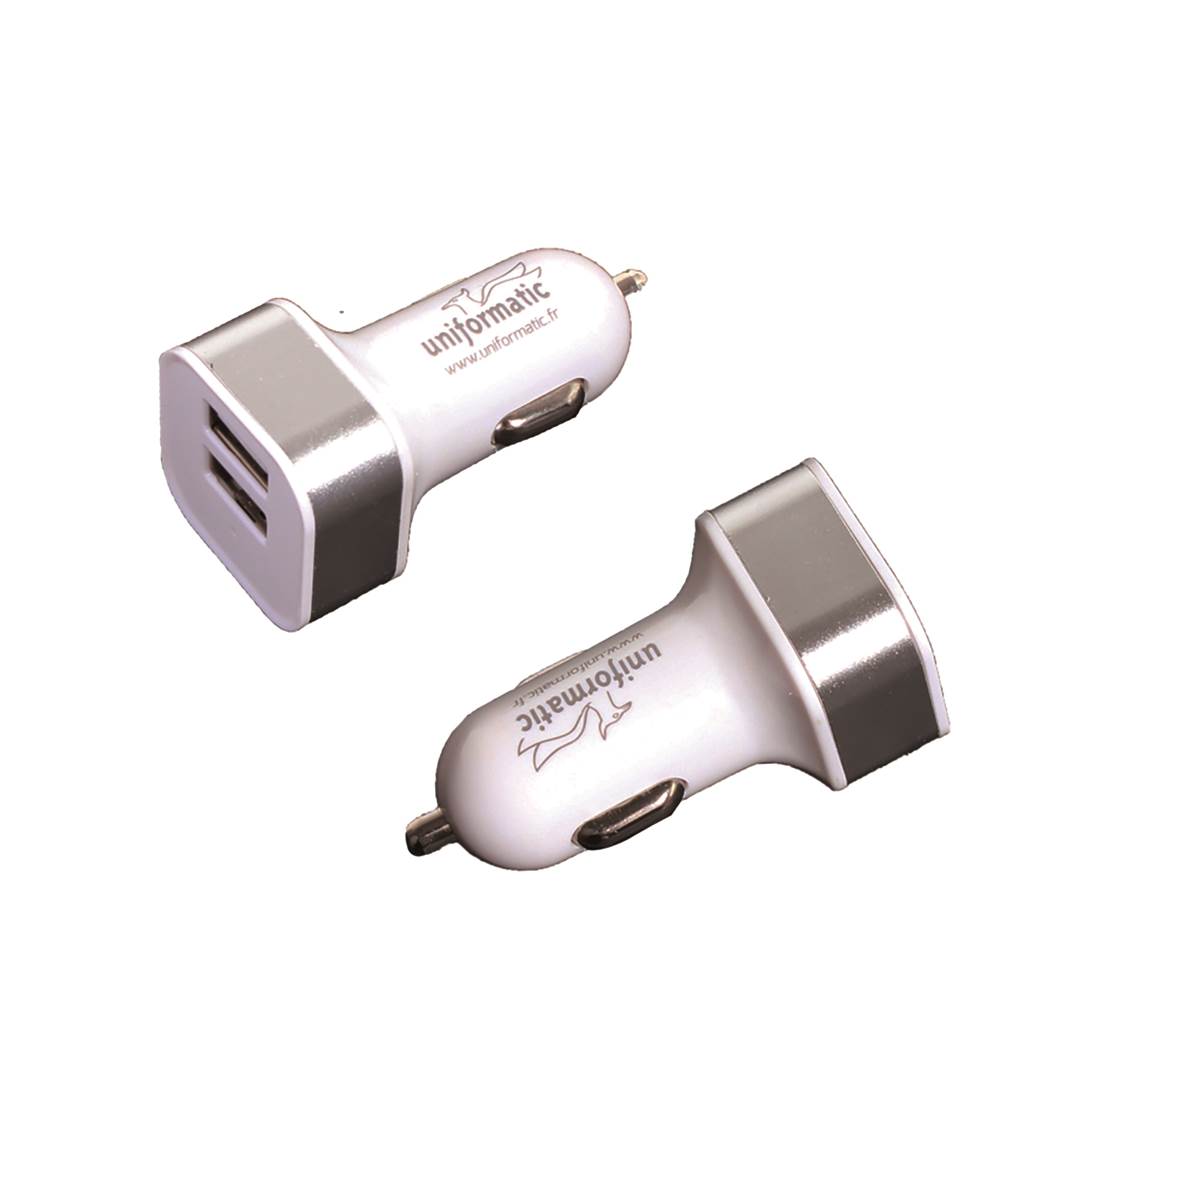 Uniformatic - CHARGEUR ALLUME CIGARE DOUBLE USB POUR APPAREIL MOBILE